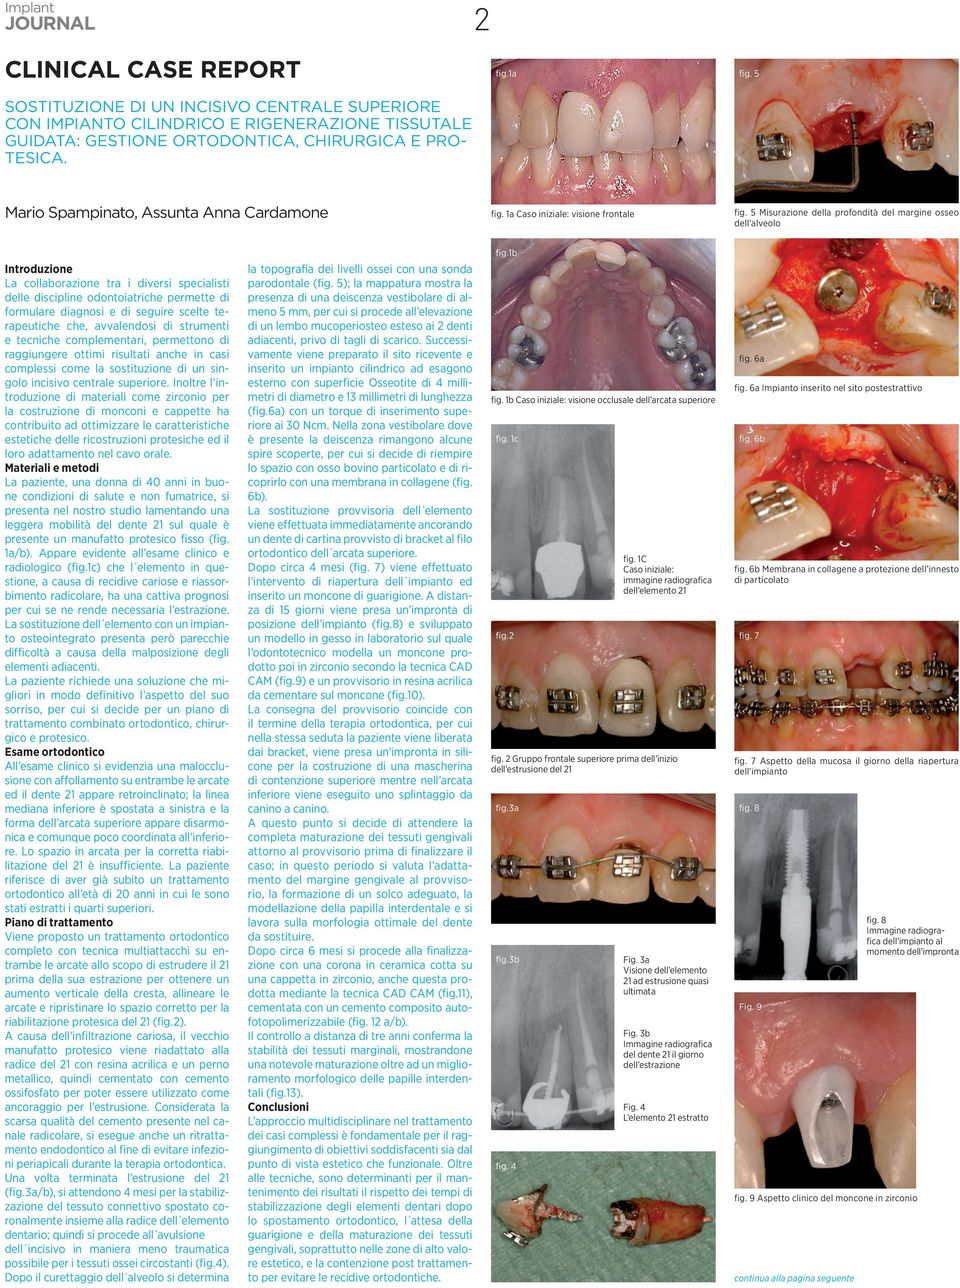 5 Misurazione della profondità del margine osseo dell alveolo Introduzione La collaborazione tra i diversi specialisti delle discipline odontoiatriche permette di formulare diagnosi e di seguire